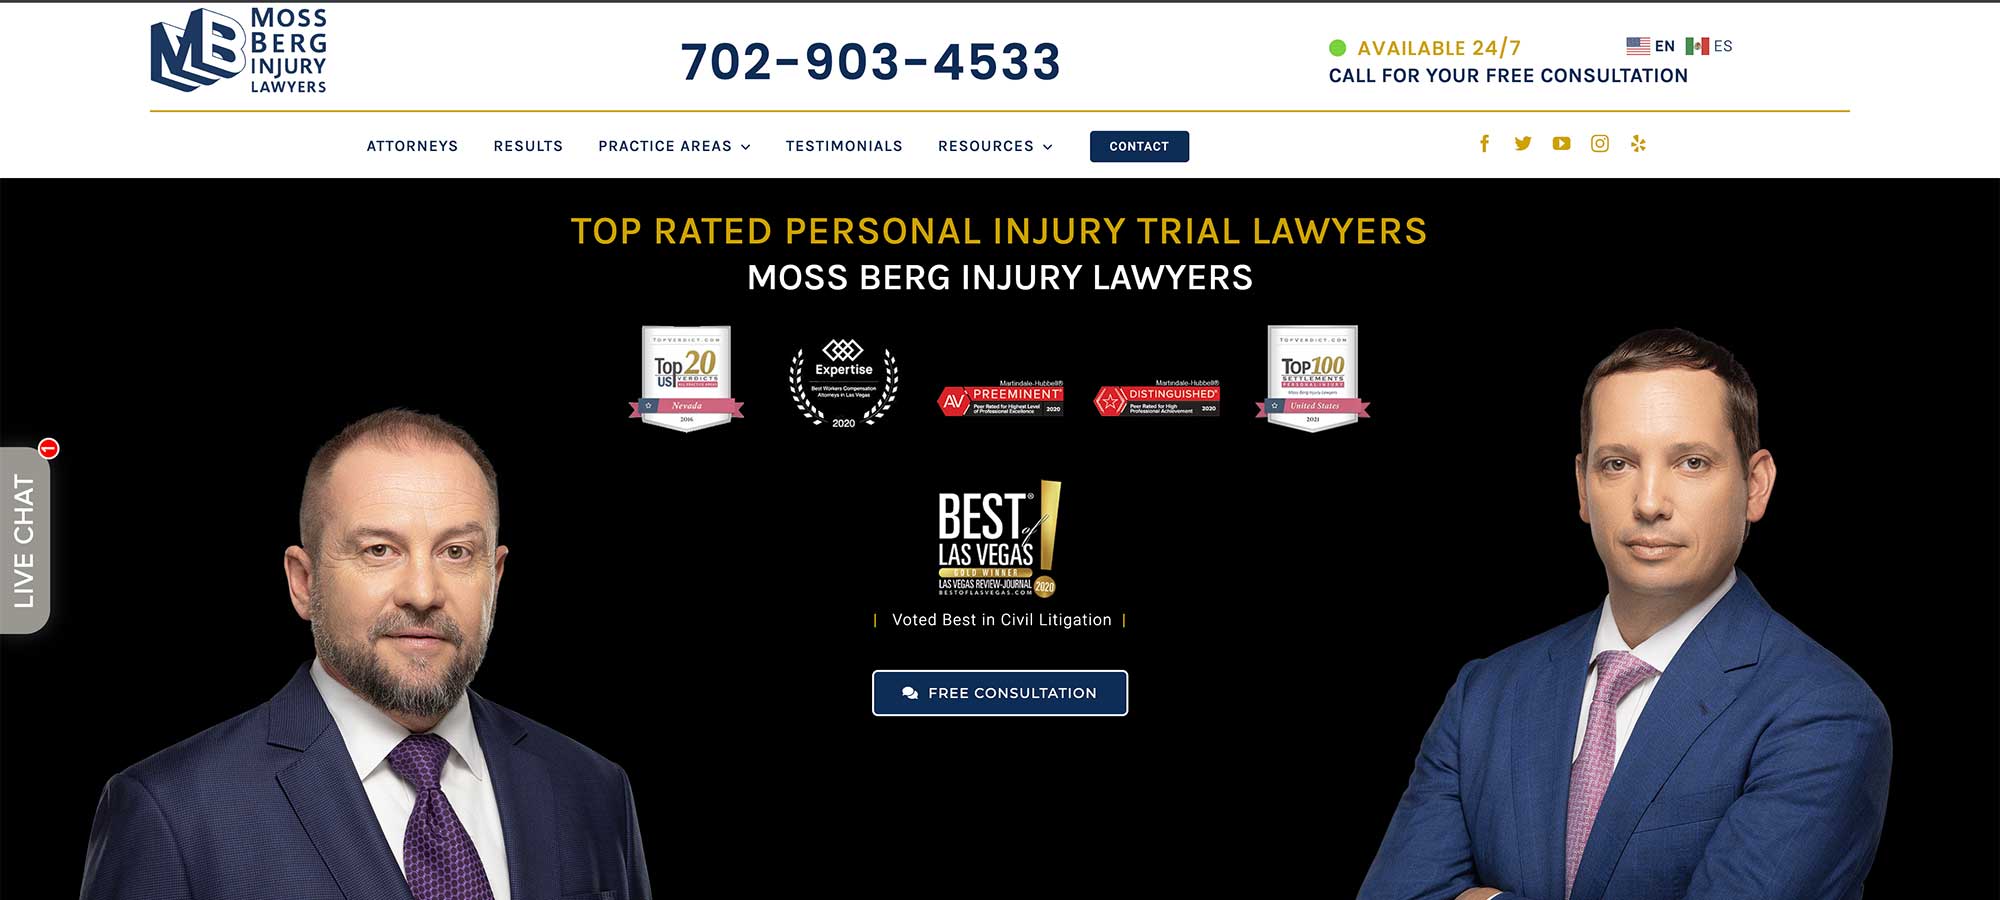 Web-Design-Mossbery-Injury-Lawyers-Hero